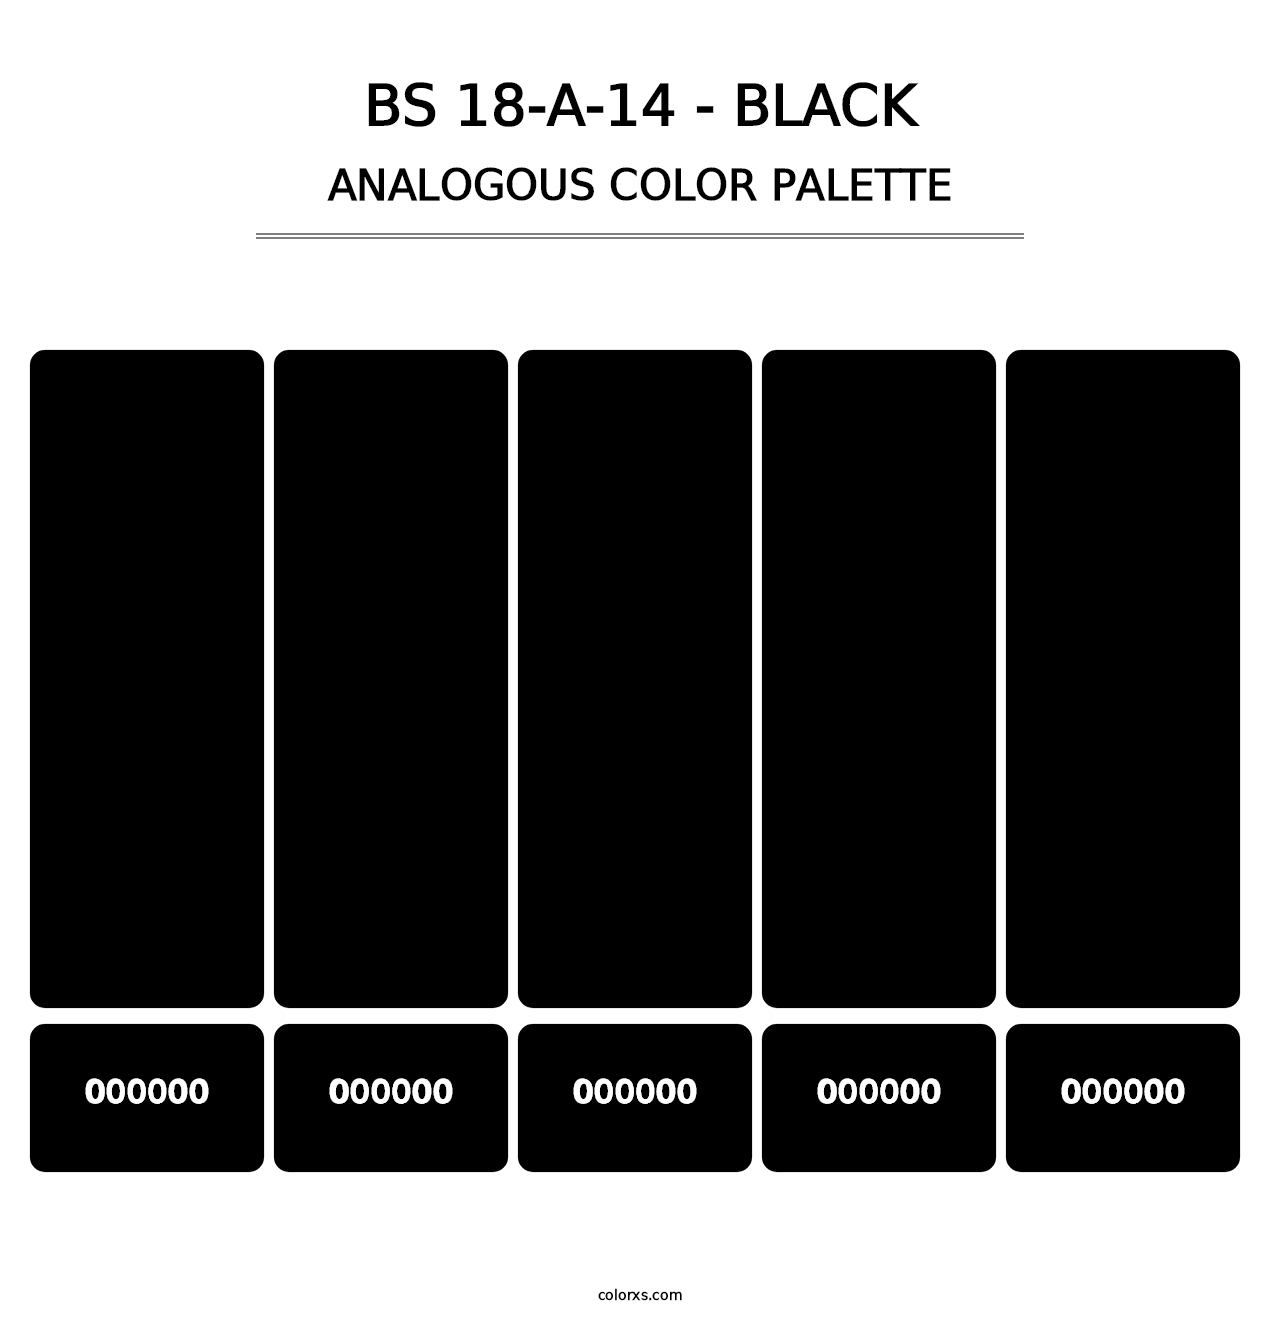 BS 18-A-14 - Black - Analogous Color Palette